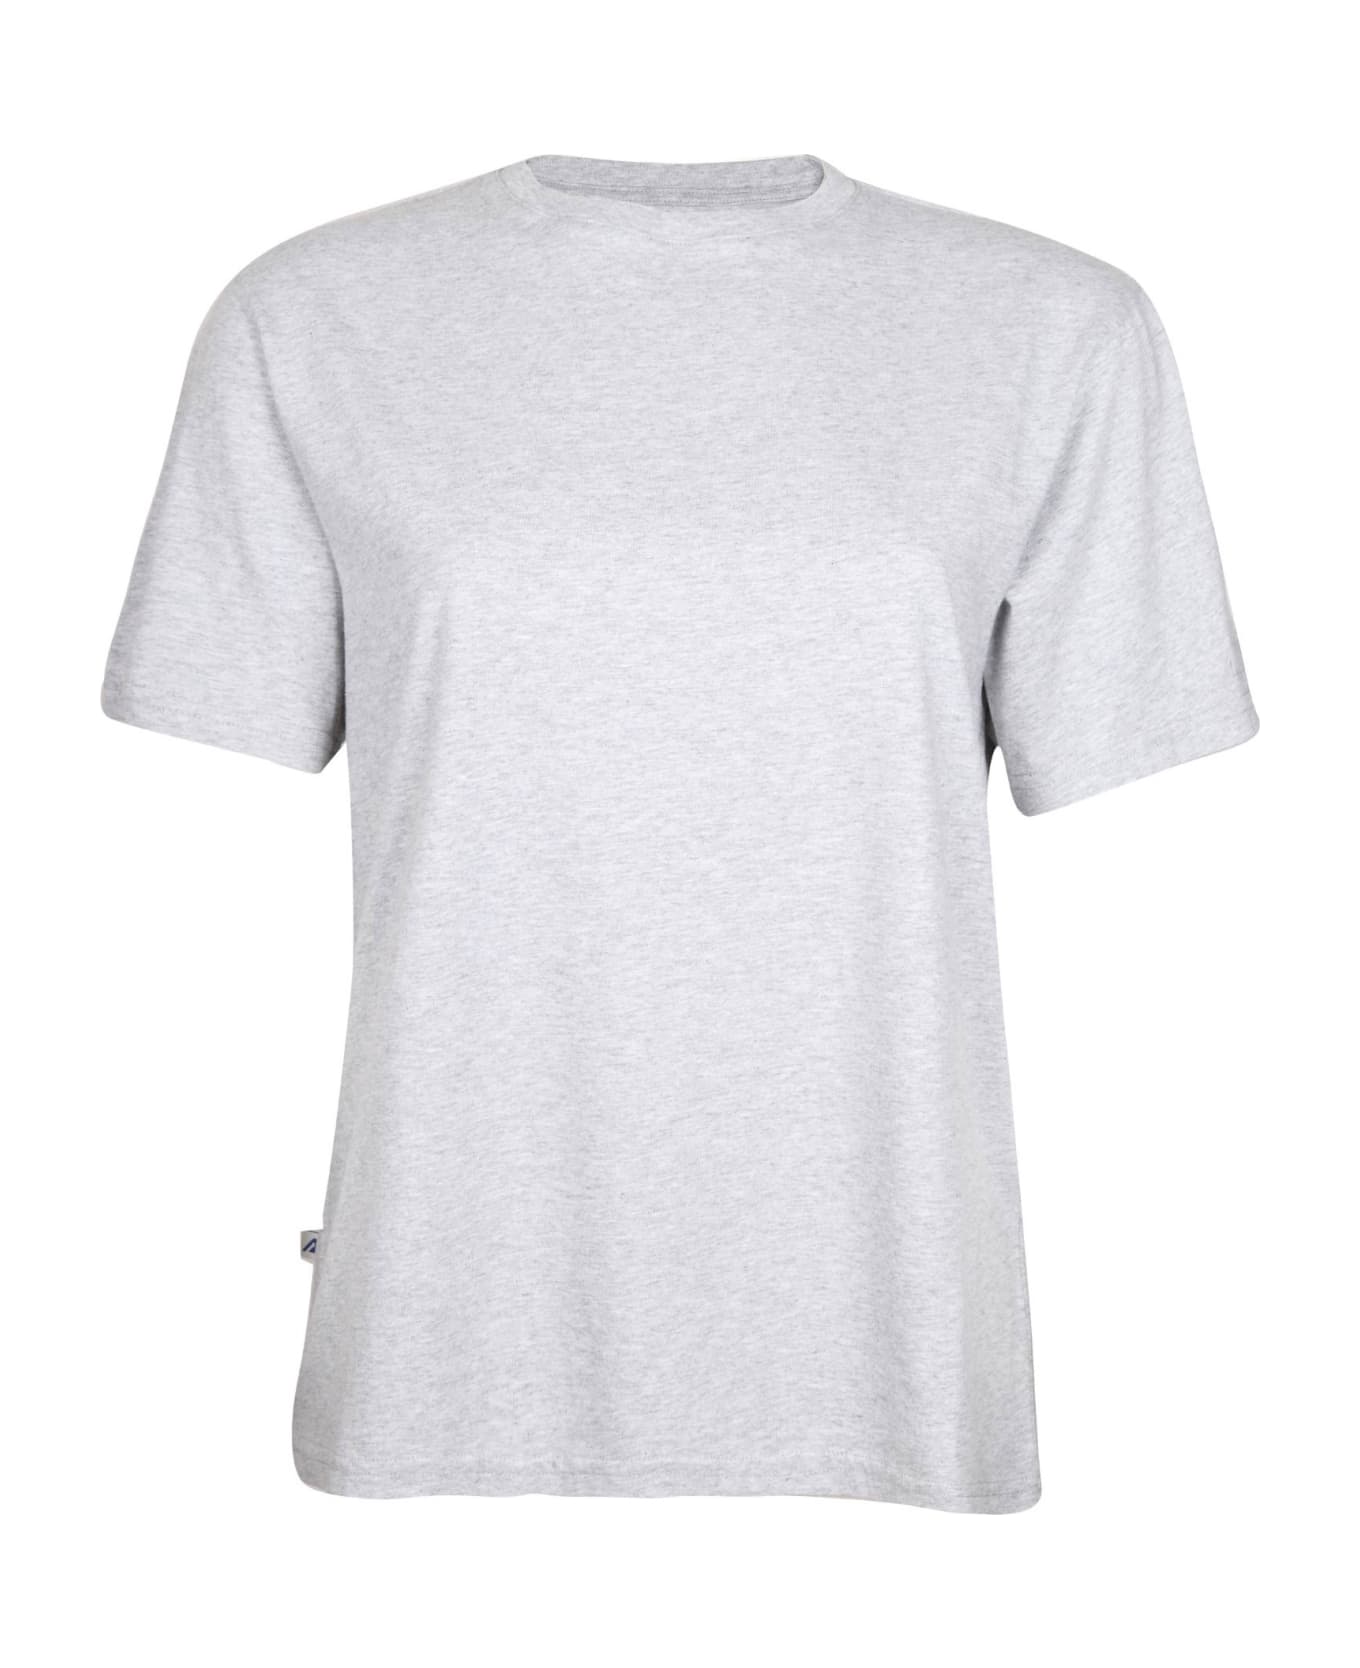 Autry Melange Gray Colroe Cotton T-shirt - MELANGE Tシャツ